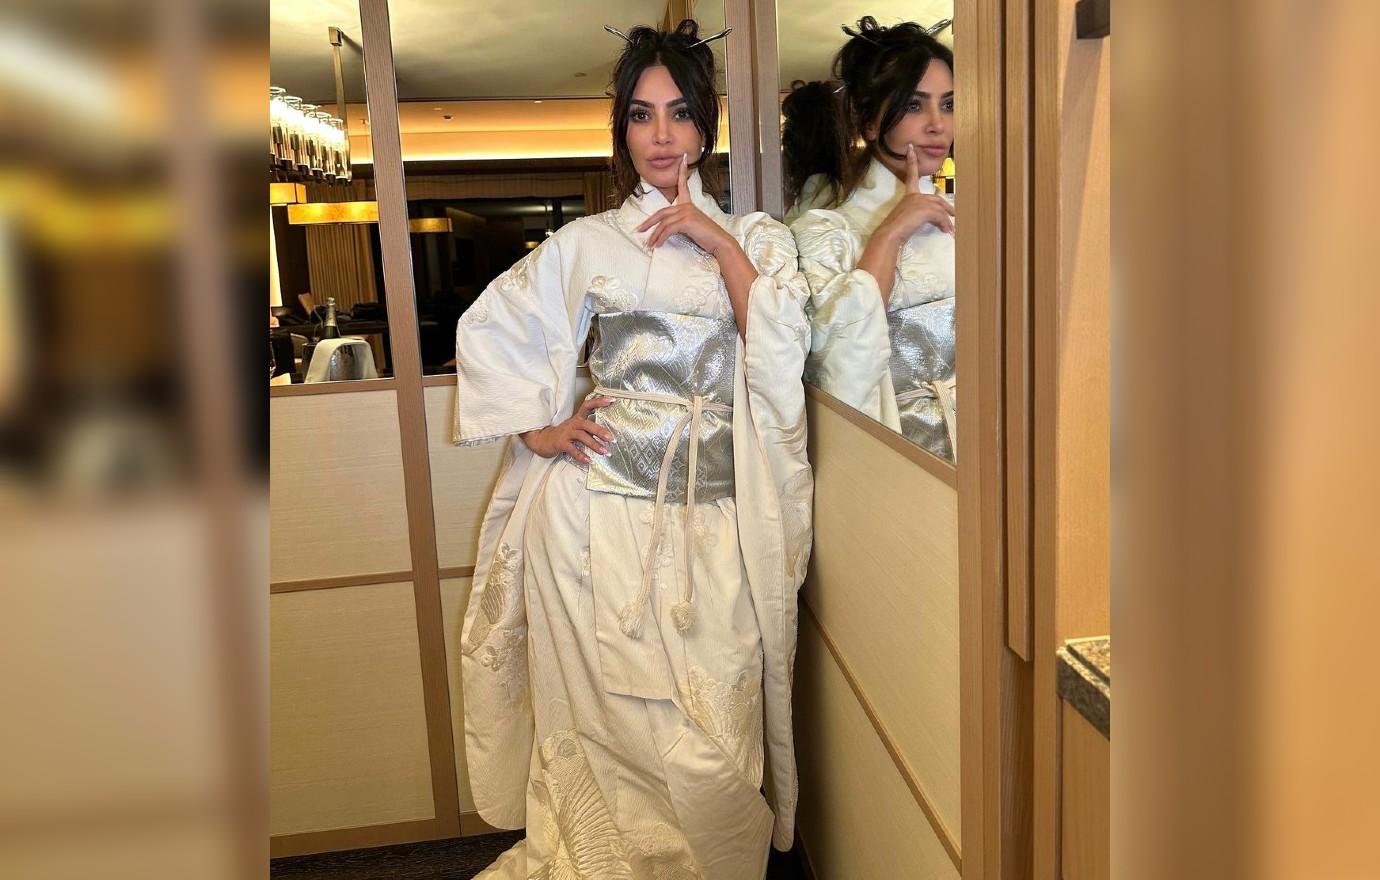 KimOhNo: Kim Kardashian Sparks Cultural Outrage With 'Kimono' Line